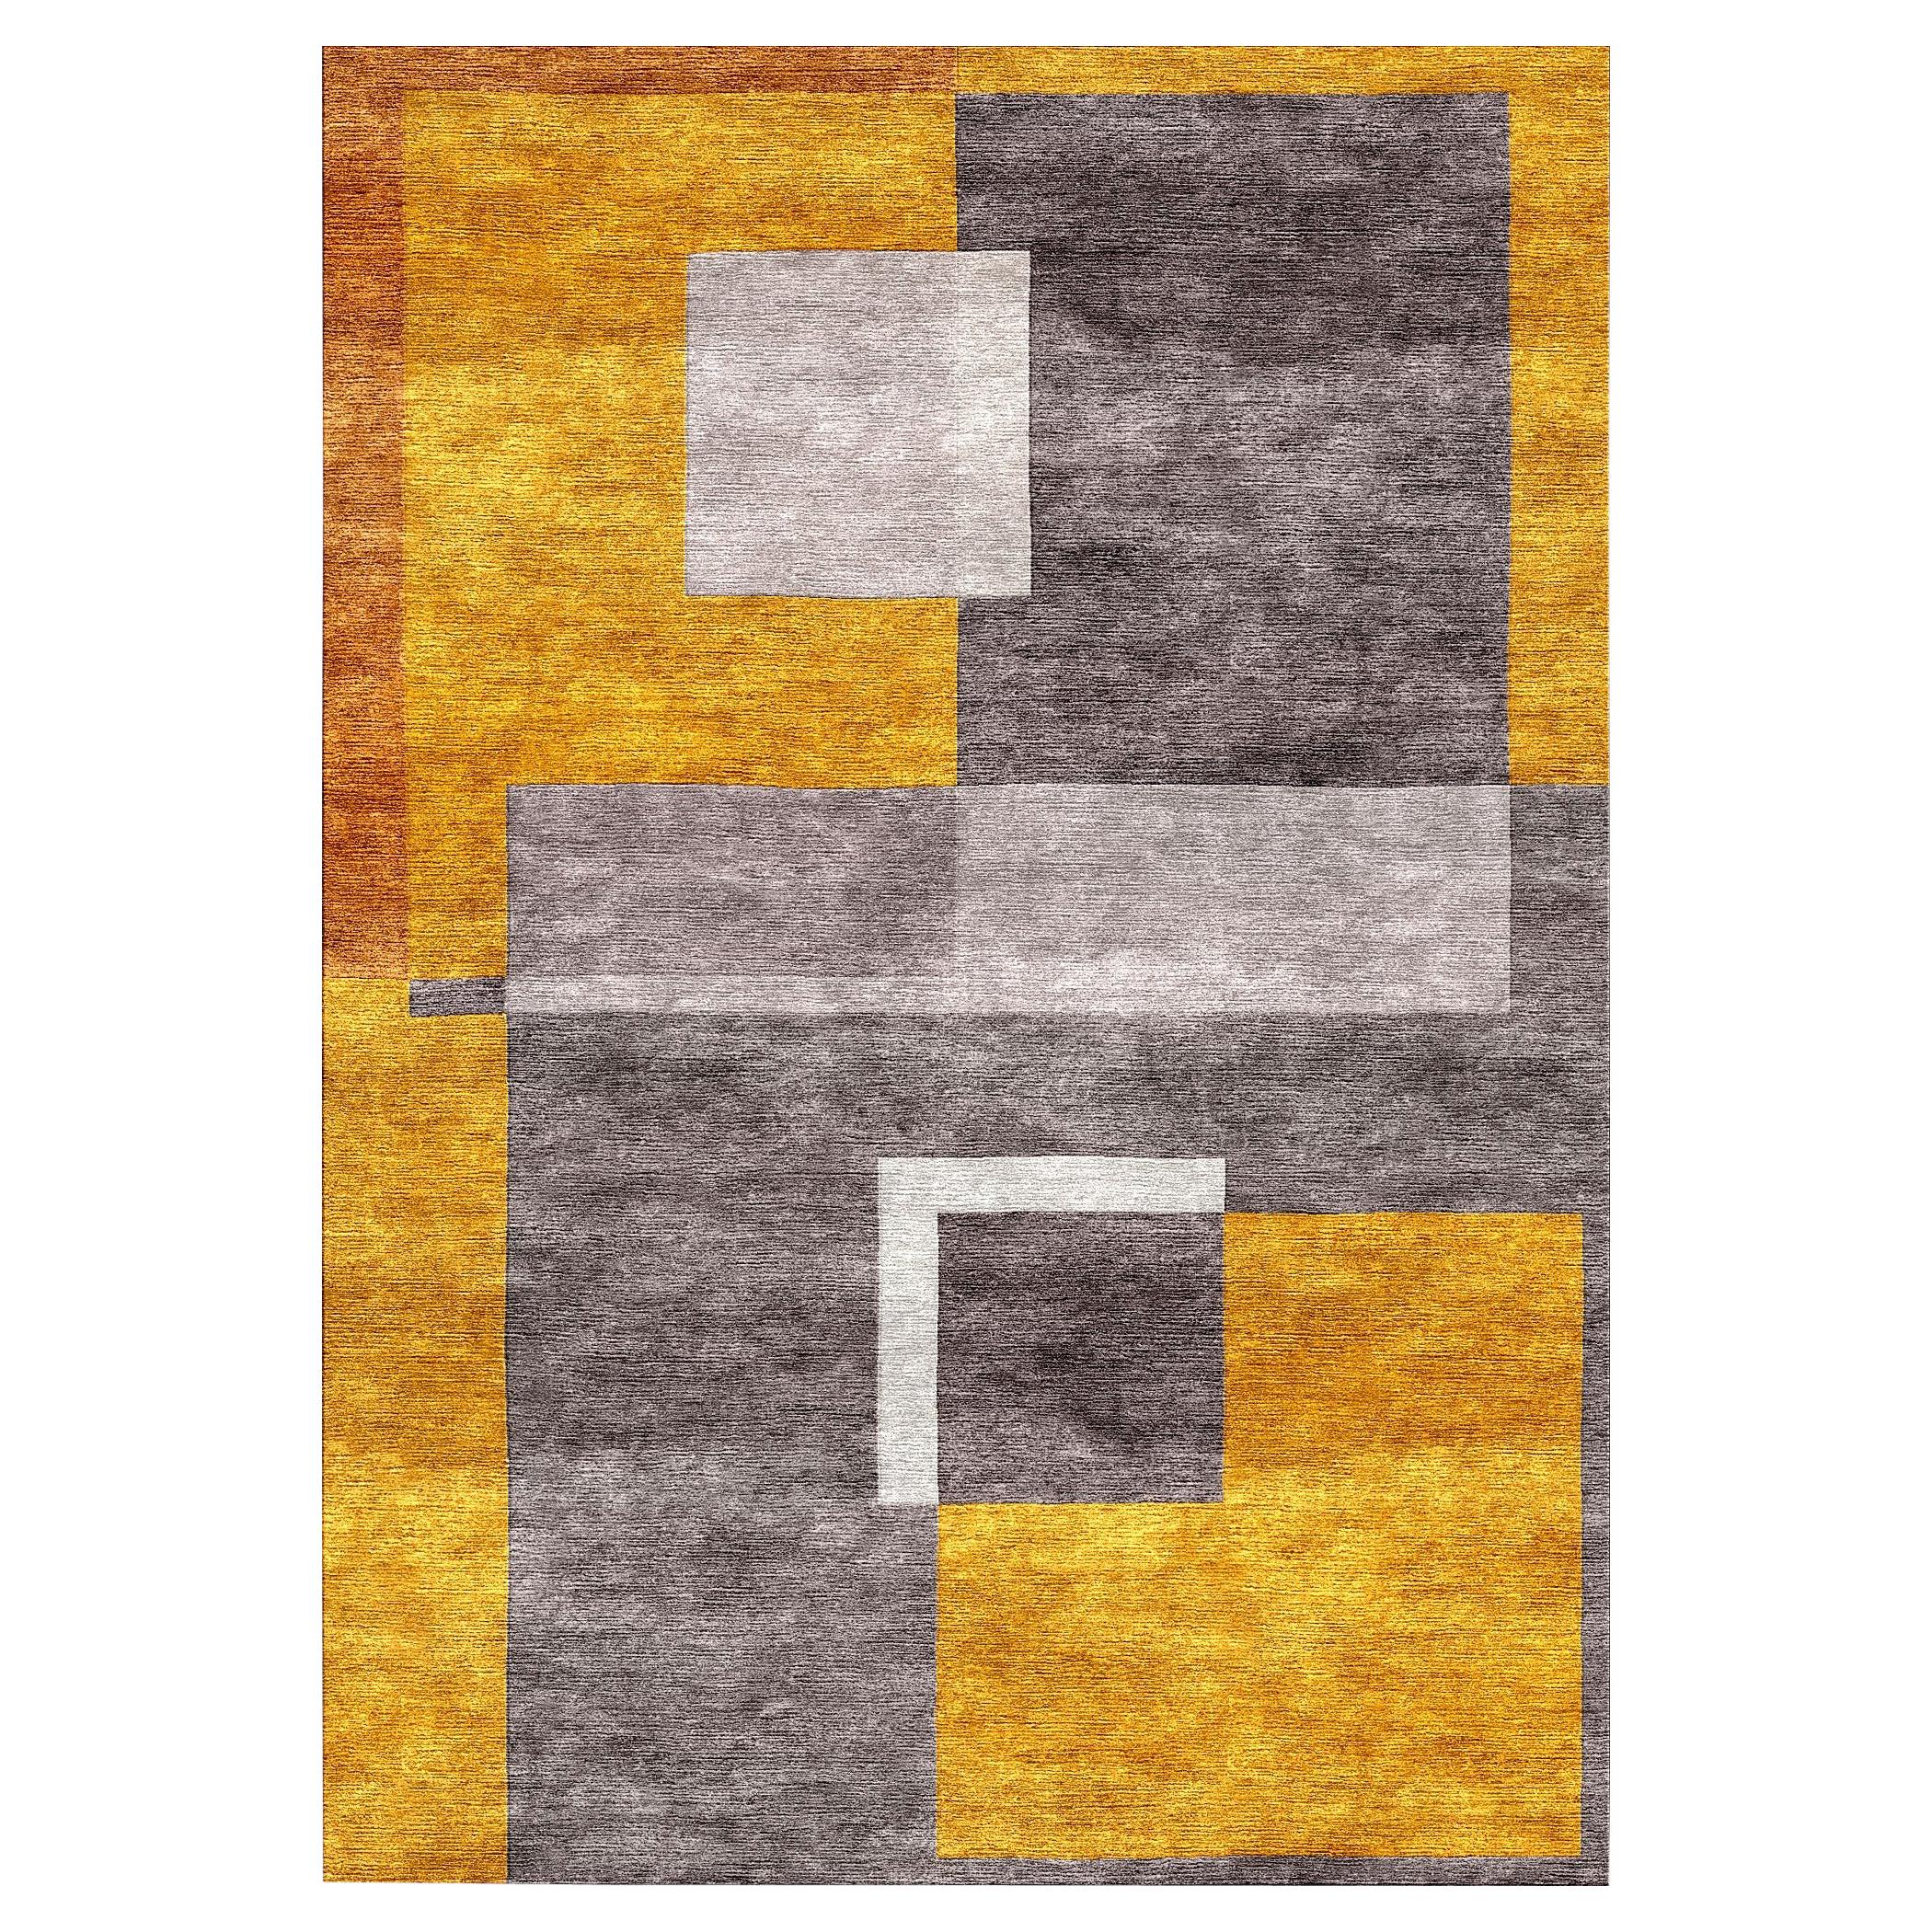 Tapis en soie réfracturée cubiste or béton noué à la main design moderne contemporain et contemporain